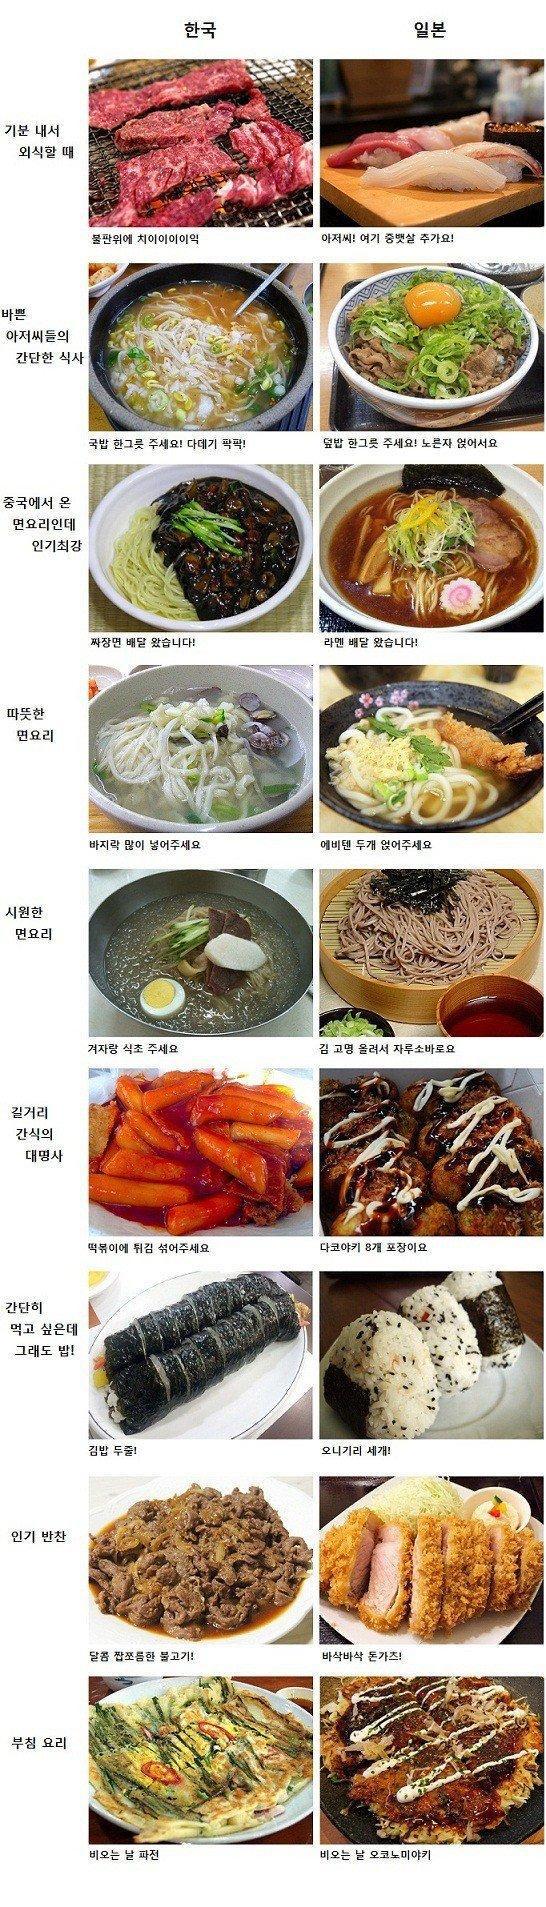 한국 VS 일본 주요음식 비교